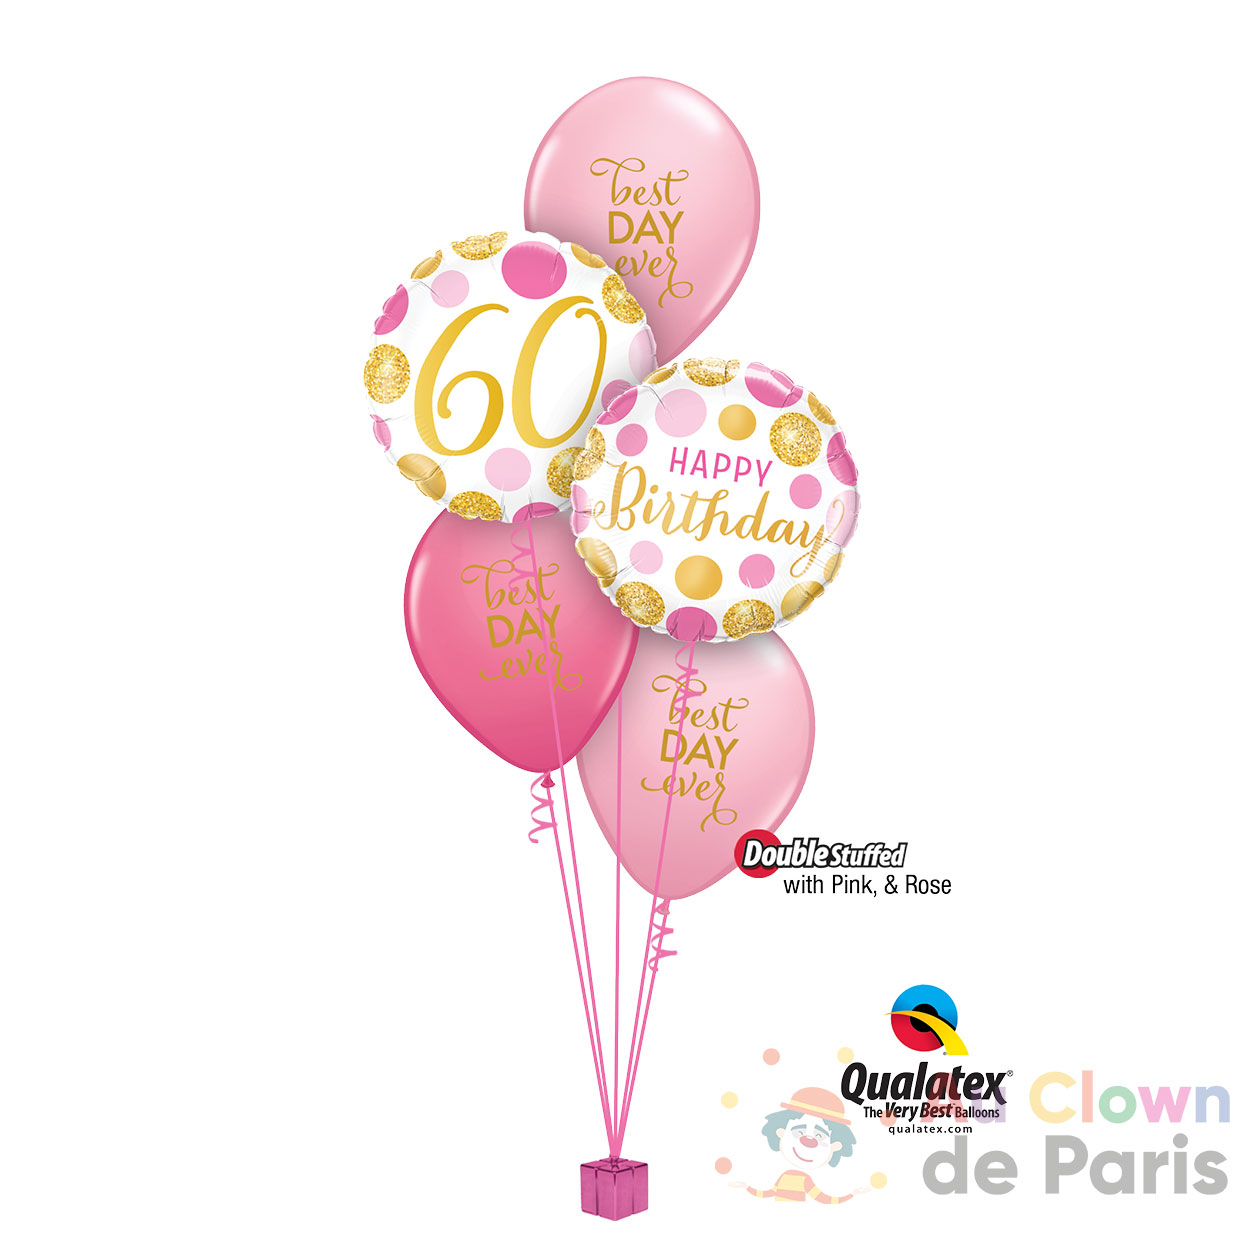 Bouquet de ballons anniversaire Champagne - Au Clown de Paris